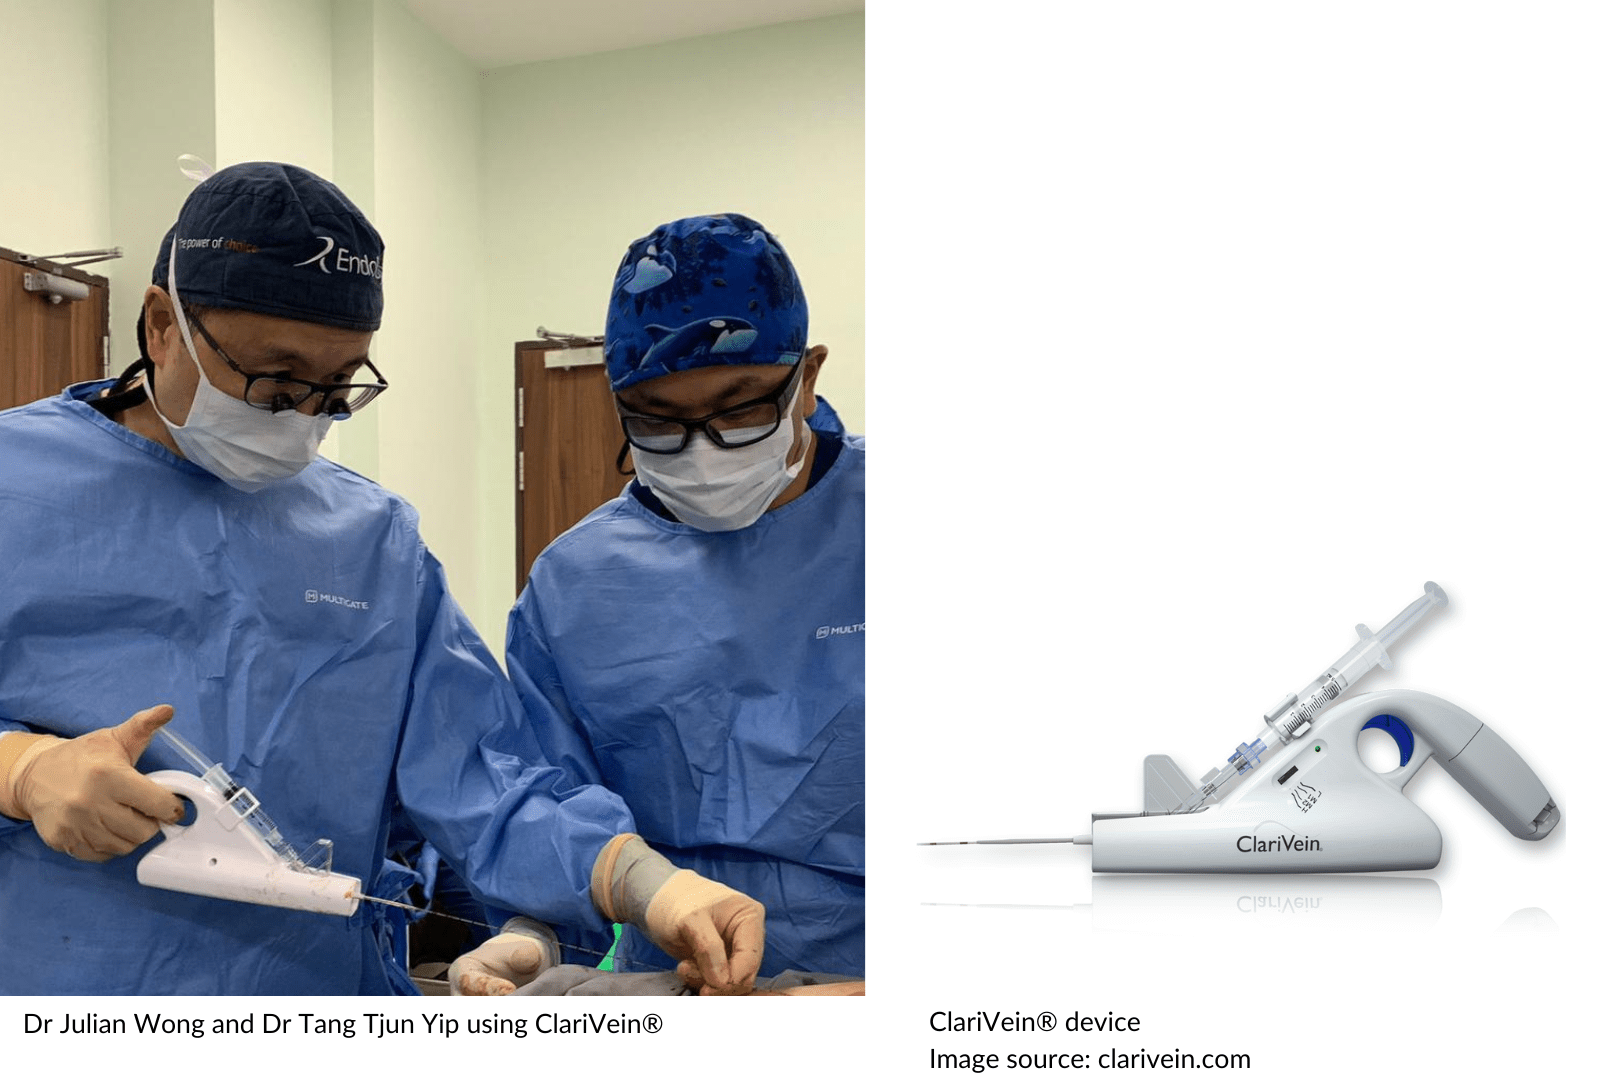  Dr Julian Wong & Dr Tang Tjun Yip Uing Clari Veins